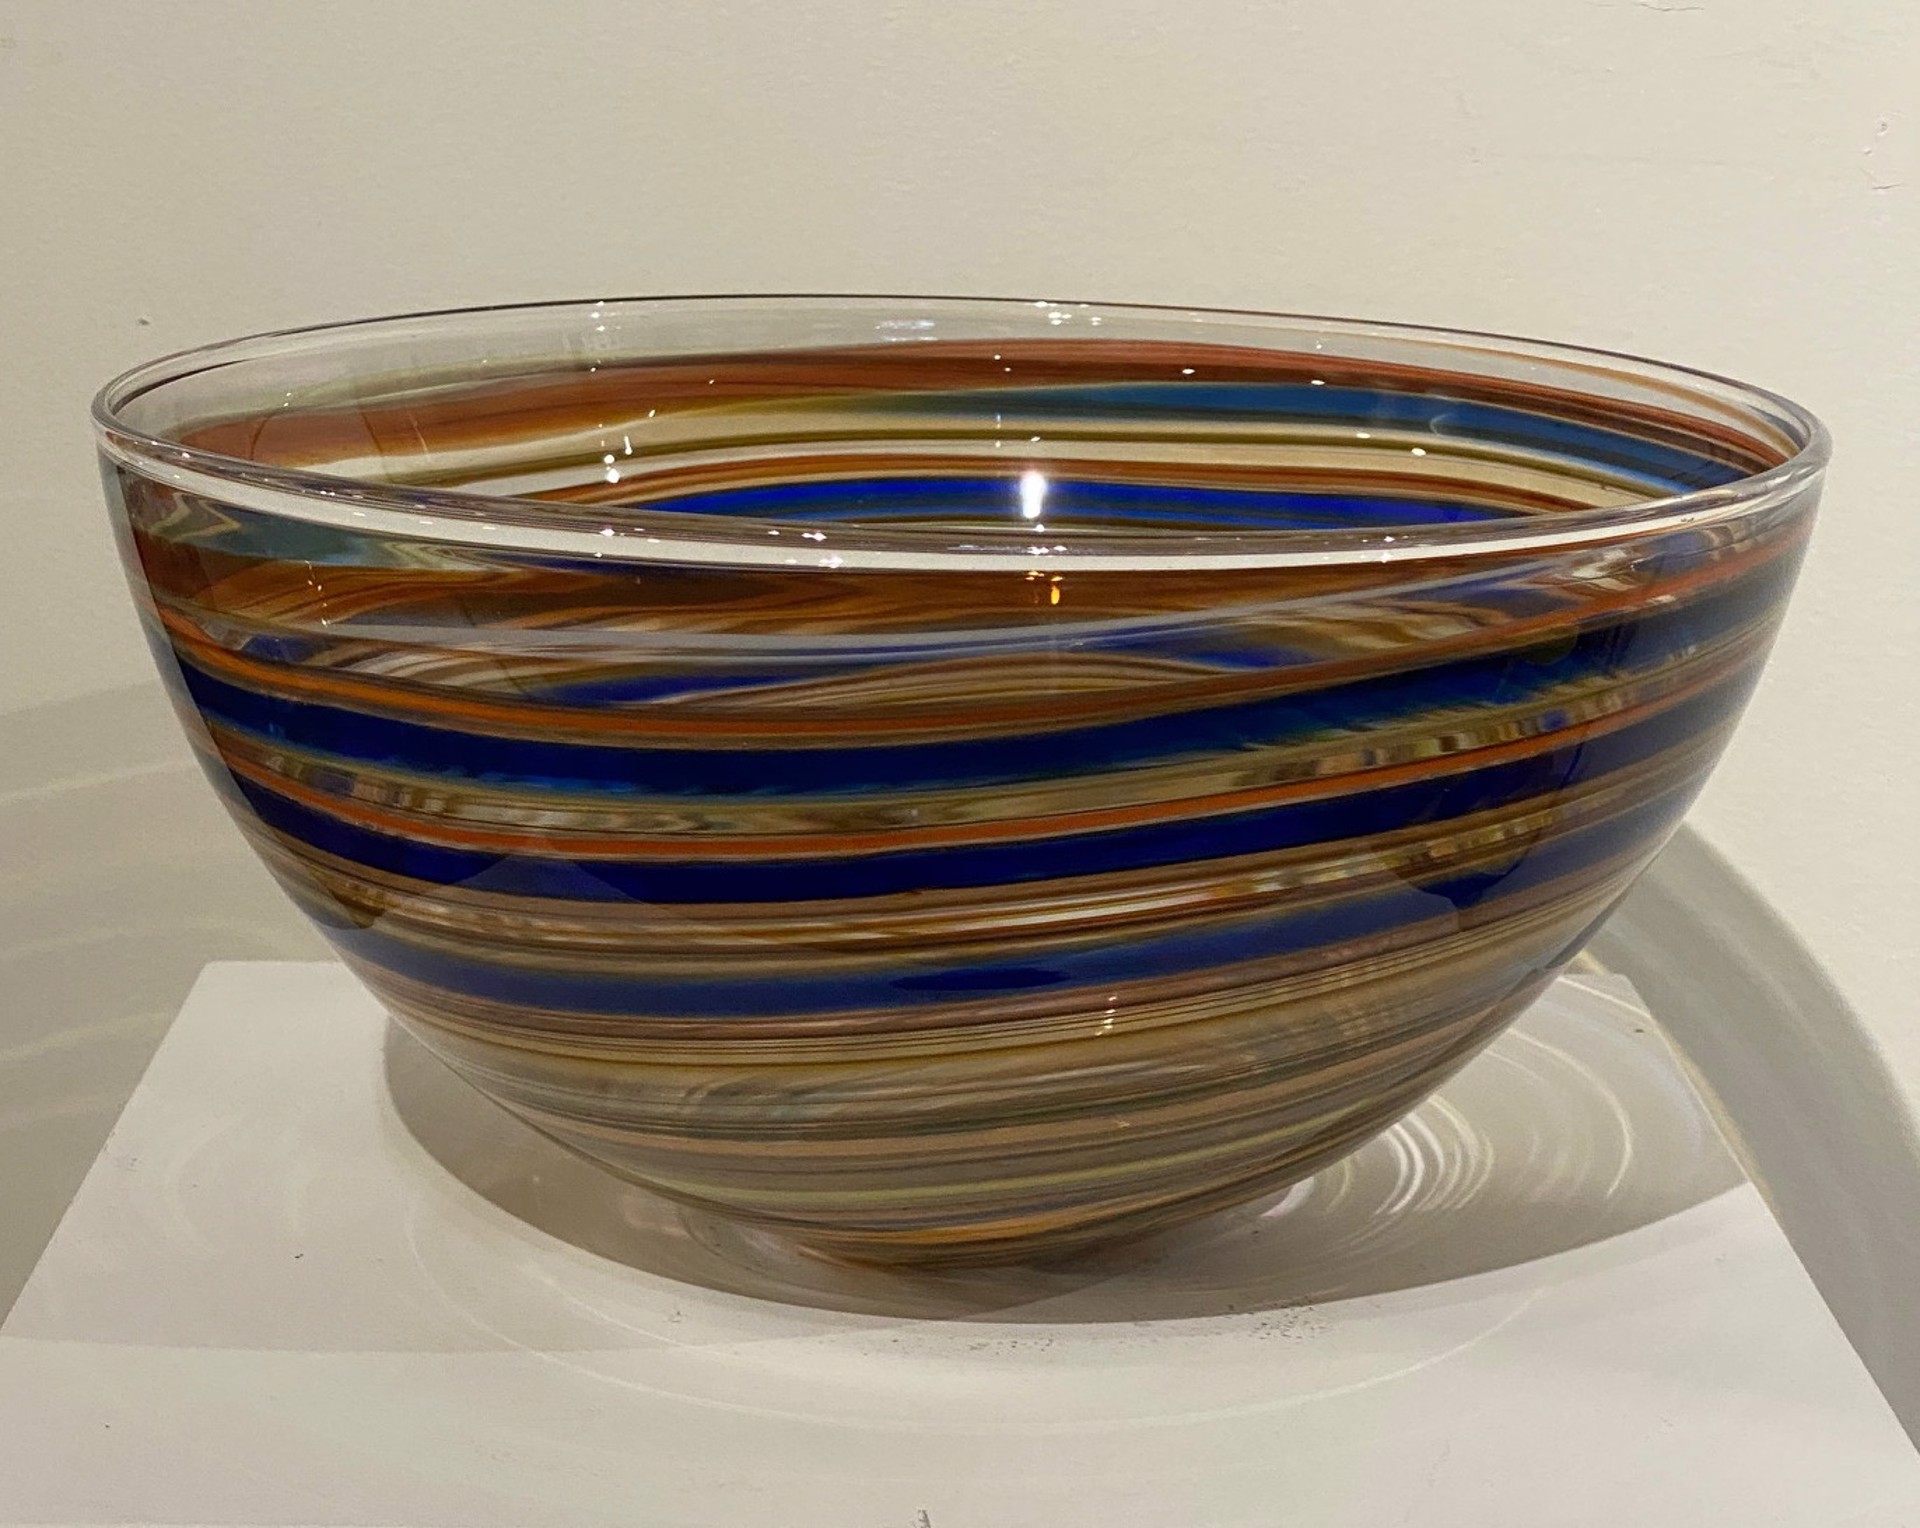 Crayon Bowl I (Blue/Orange) by Hokanson & Dix